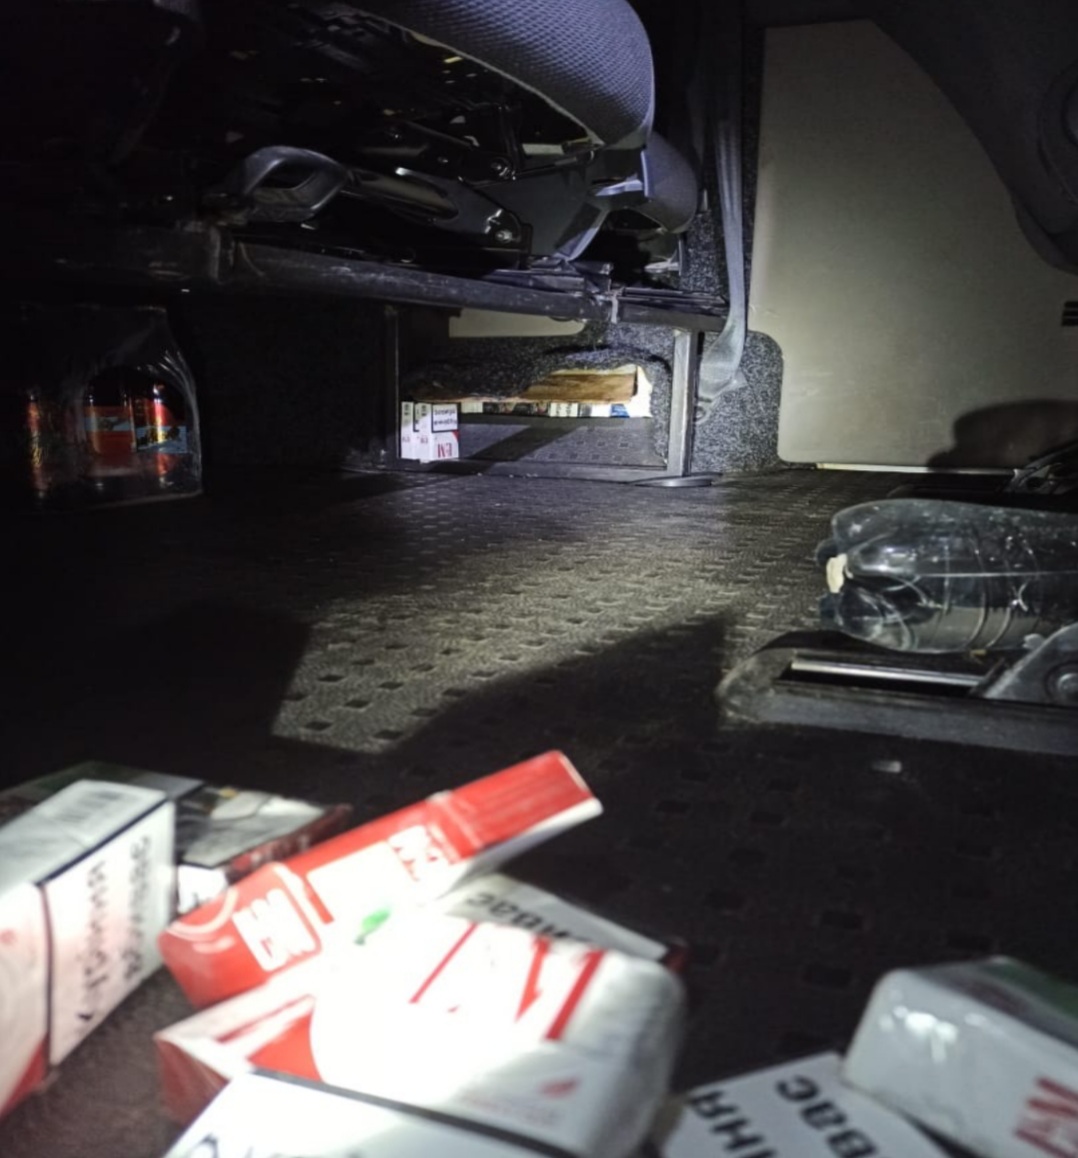 Під час огляду мікроавтобуса у ПП "Тиса" на Закарпатті у сховках знайшли 295 пачок сигарет (ФОТО)